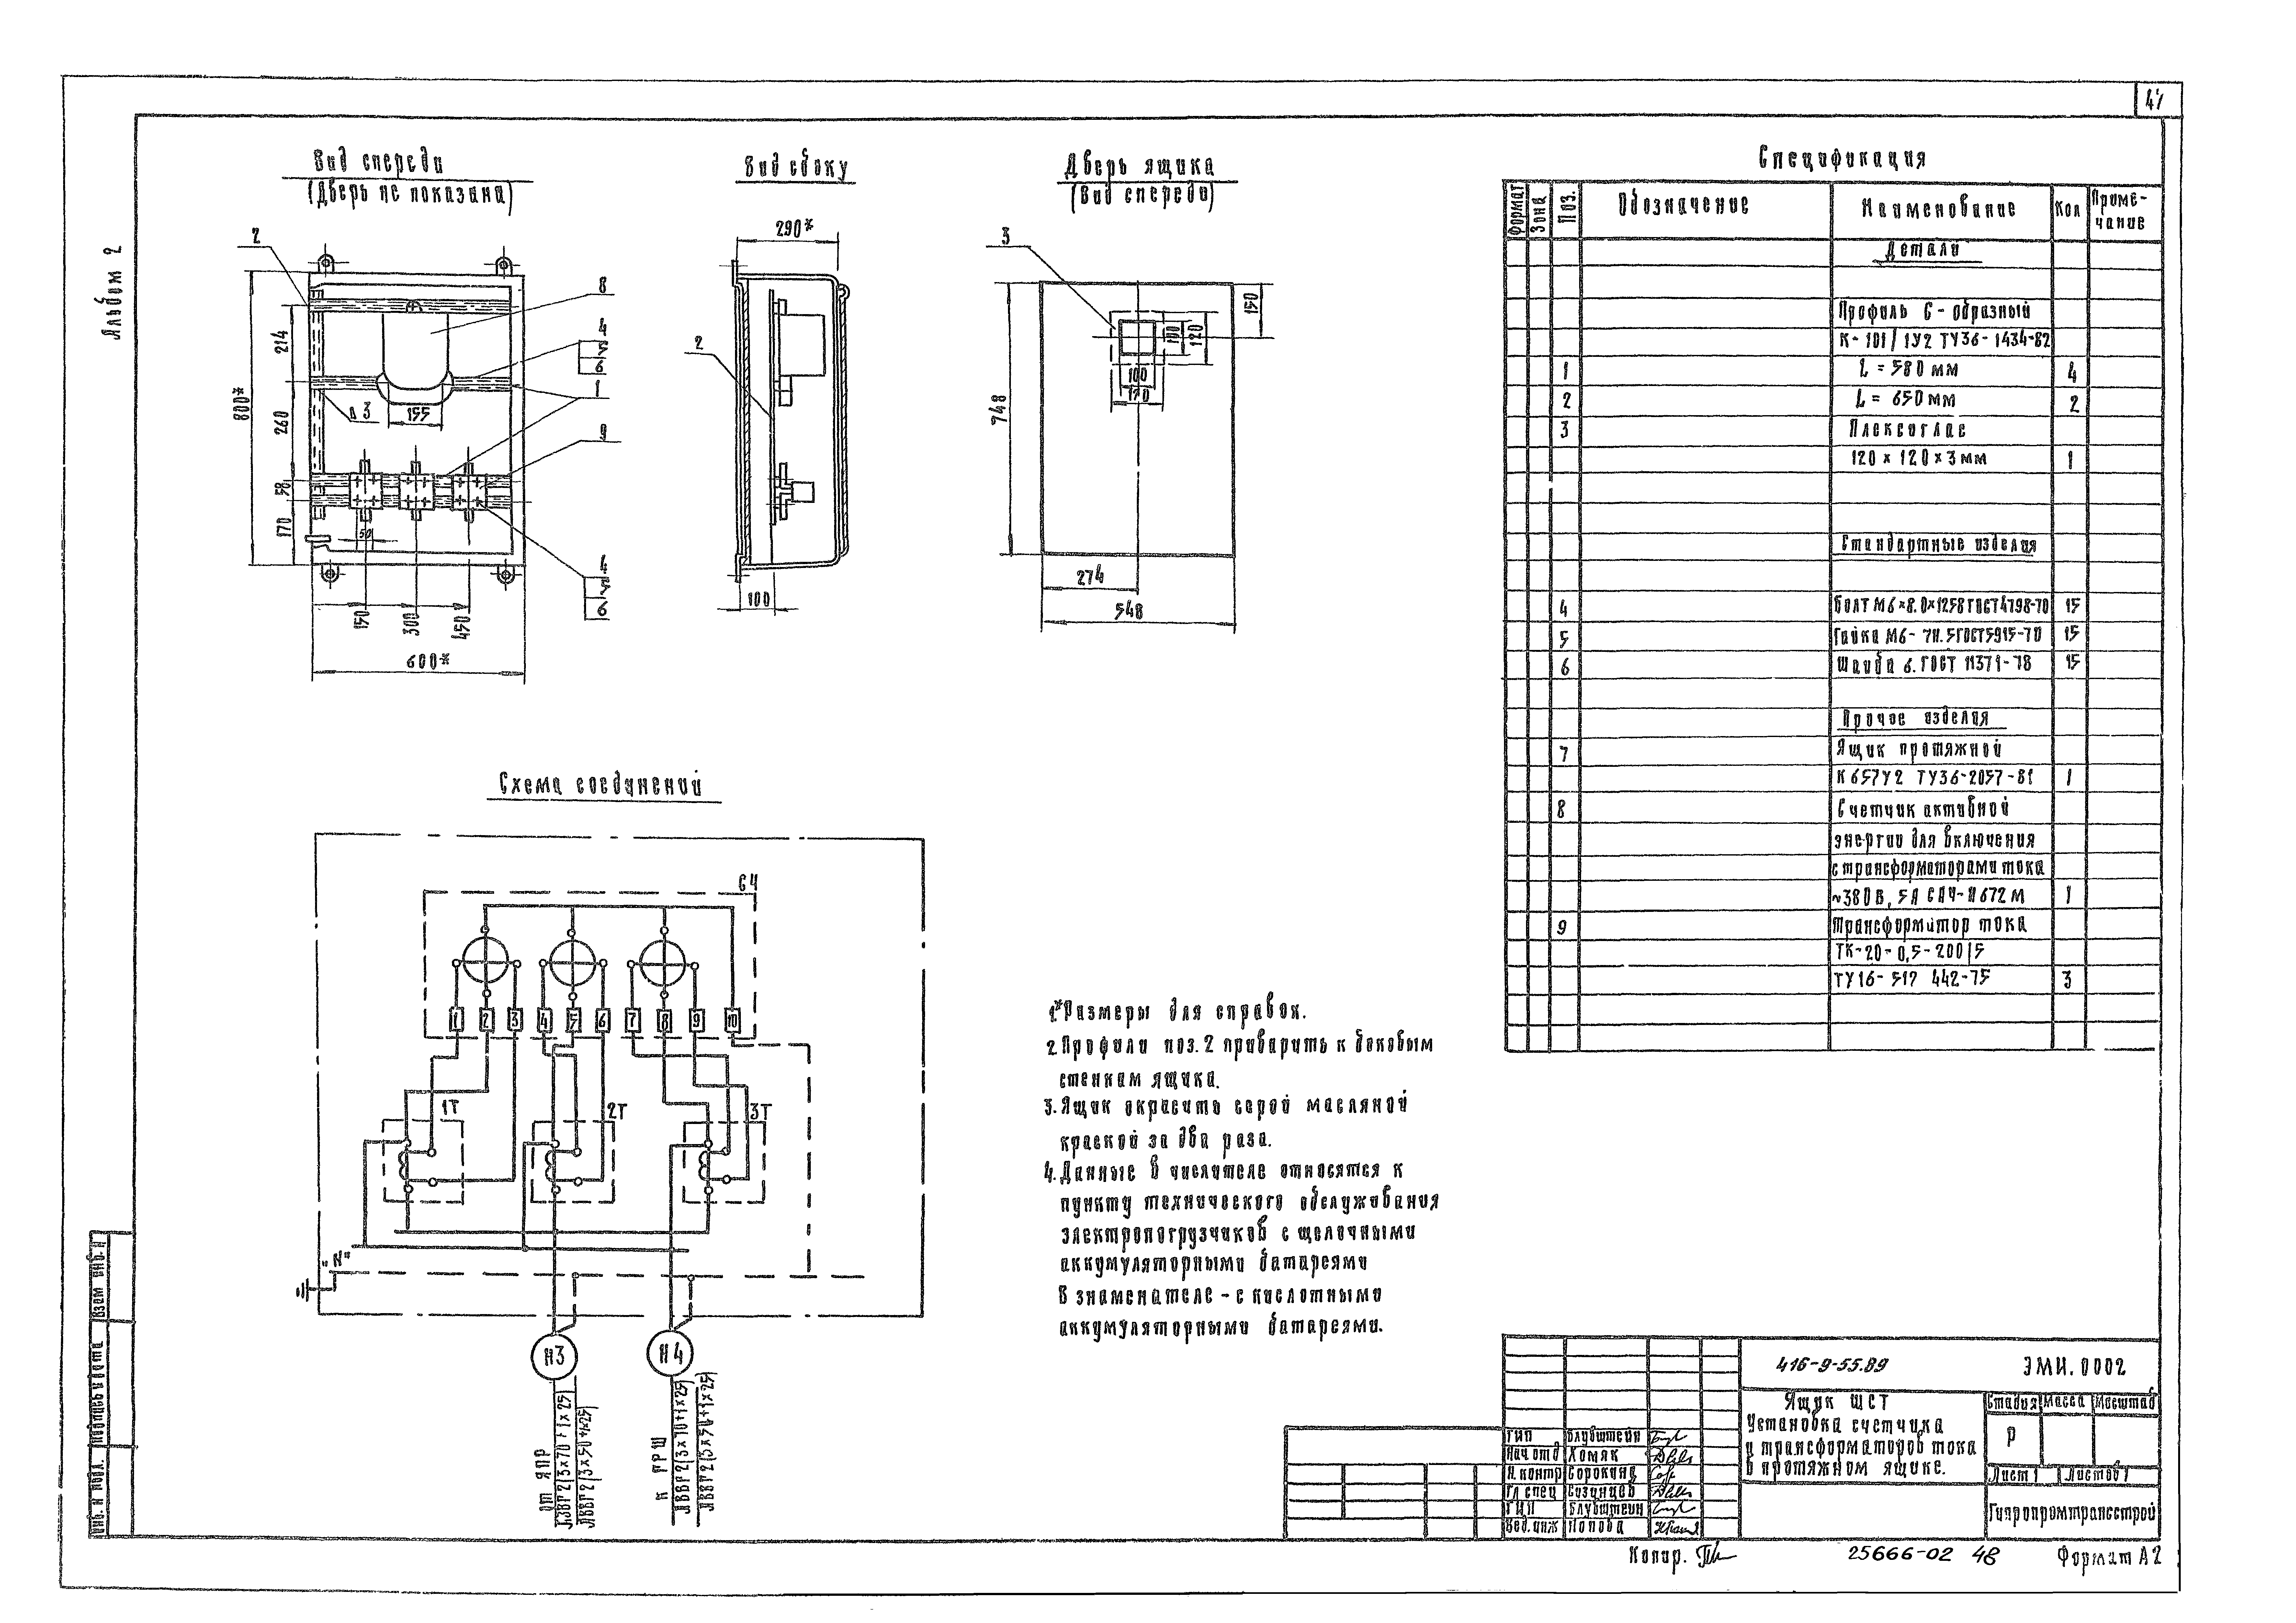 Типовой проект 416-9-55.89